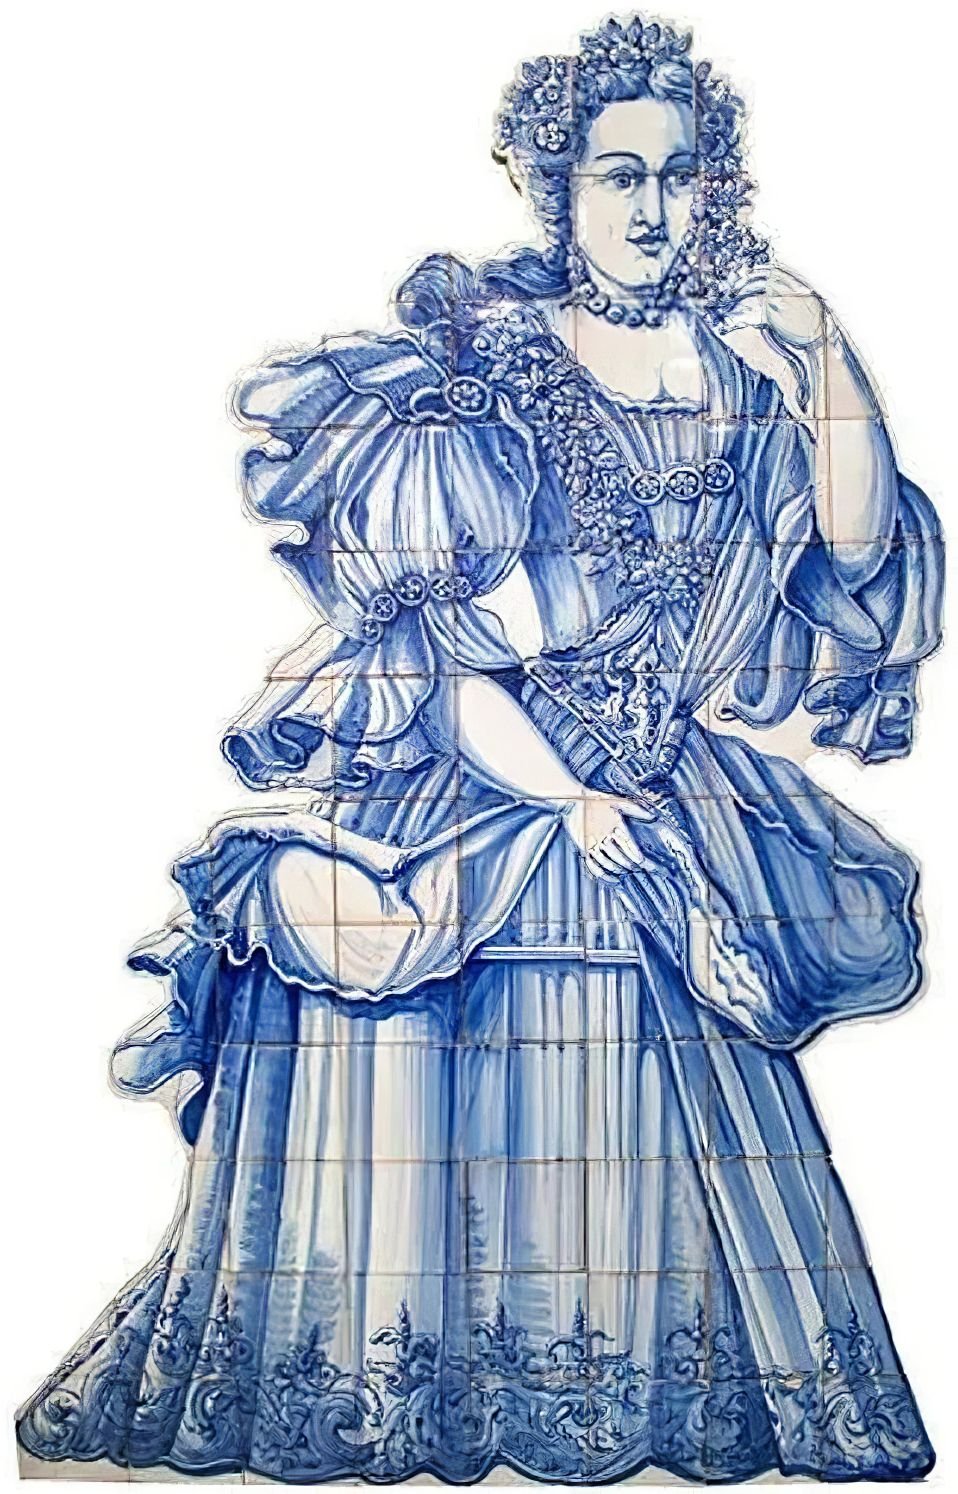 Portuguese Tile Mural "Court Lady" | Ref. PT334